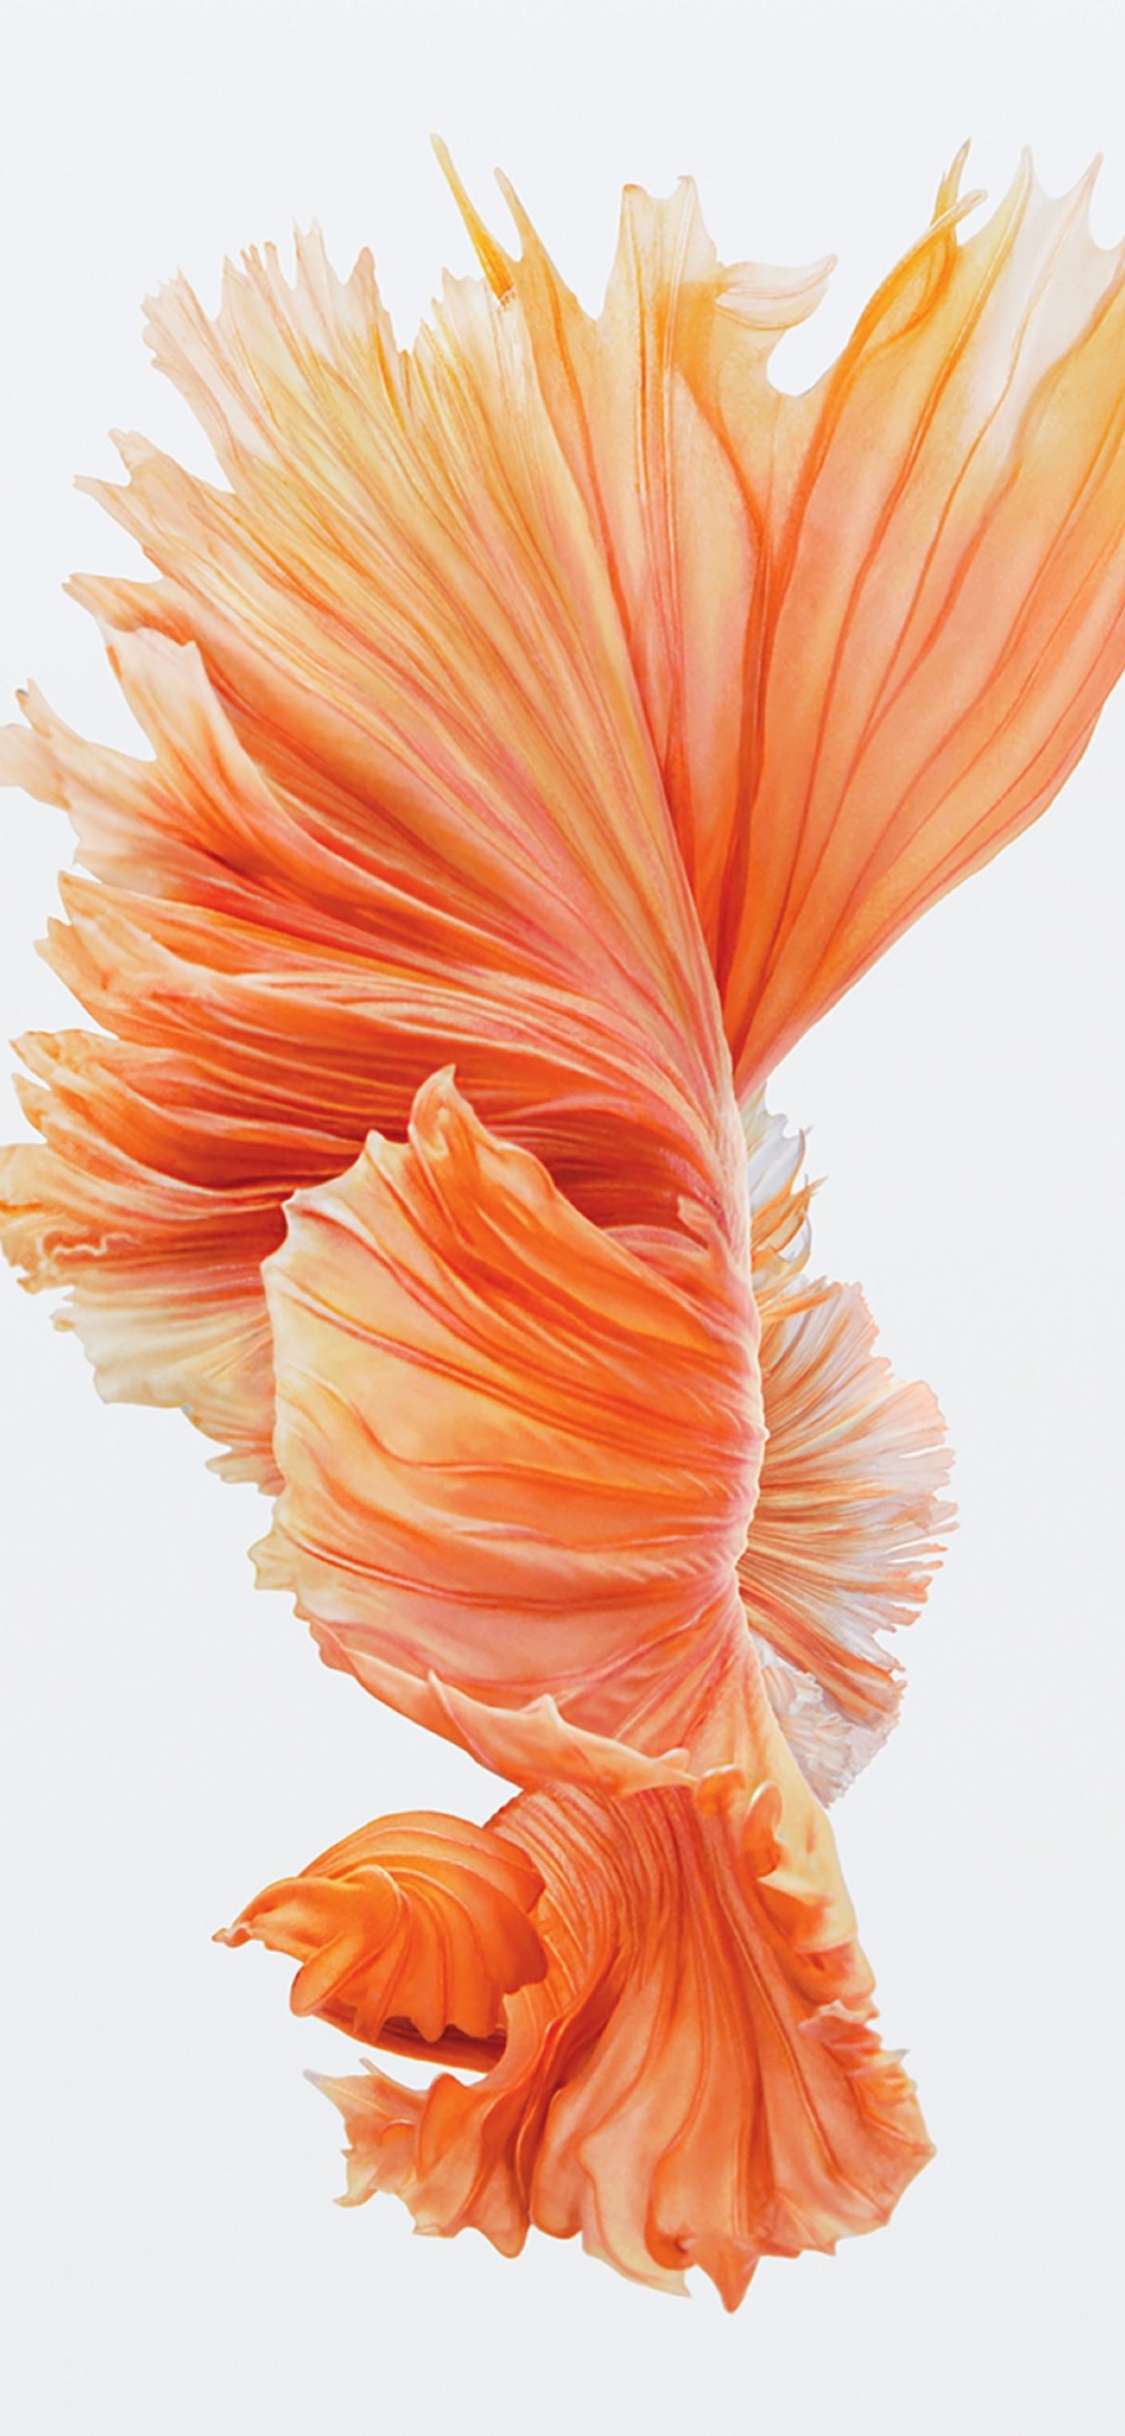 Orange Und Weiße Blumenillustration. Wallpaper in 1125x2436 Resolution